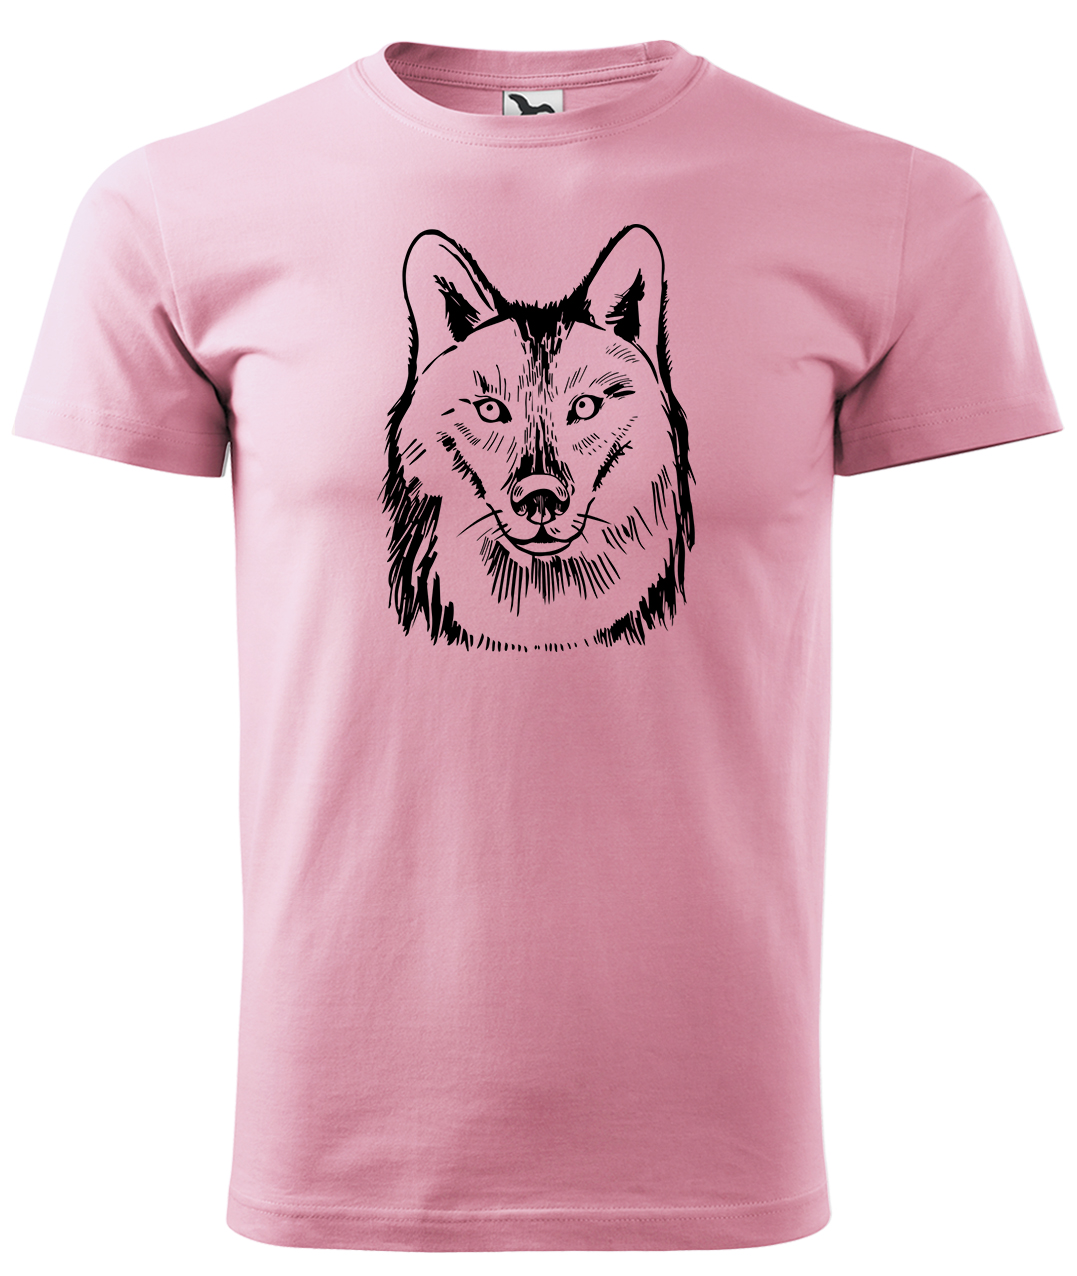 Dětské tričko s vlkem - Kresba vlka Velikost: 8 let / 134 cm, Barva: Růžová (30), Délka rukávu: Krátký rukáv